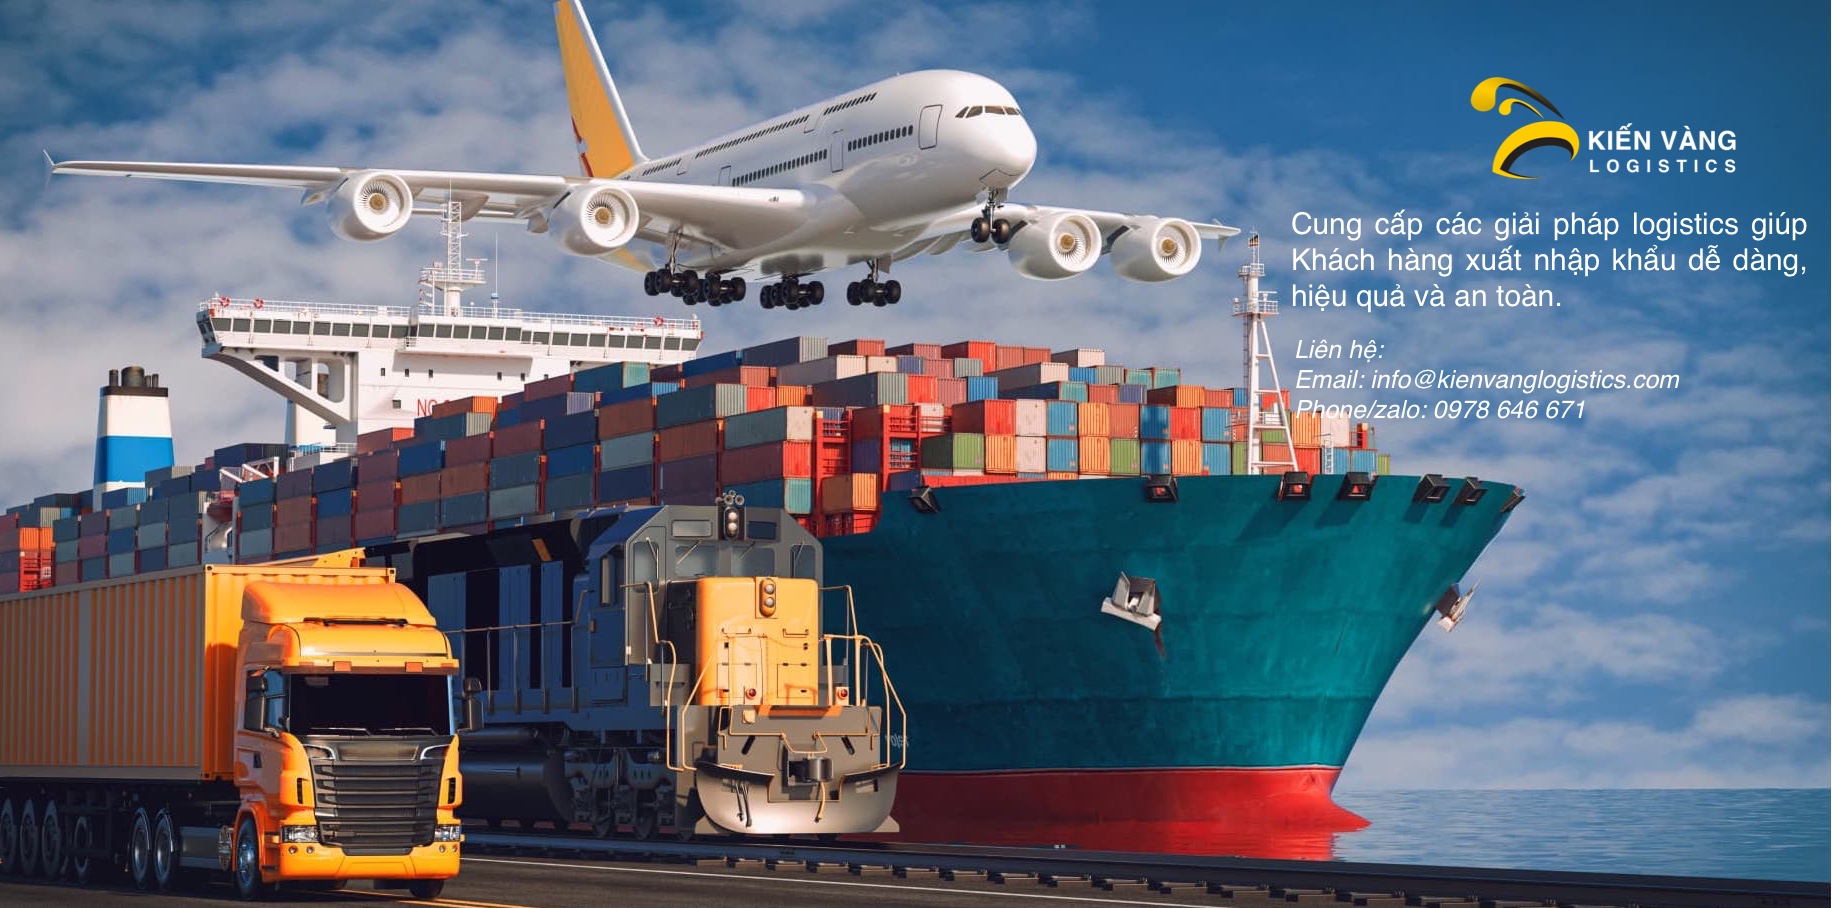 Kiến Vàng Logistics - Giải pháp logistics giúp Khách hàng xuất nhập khẩu dễ dàng, nhanh chóng